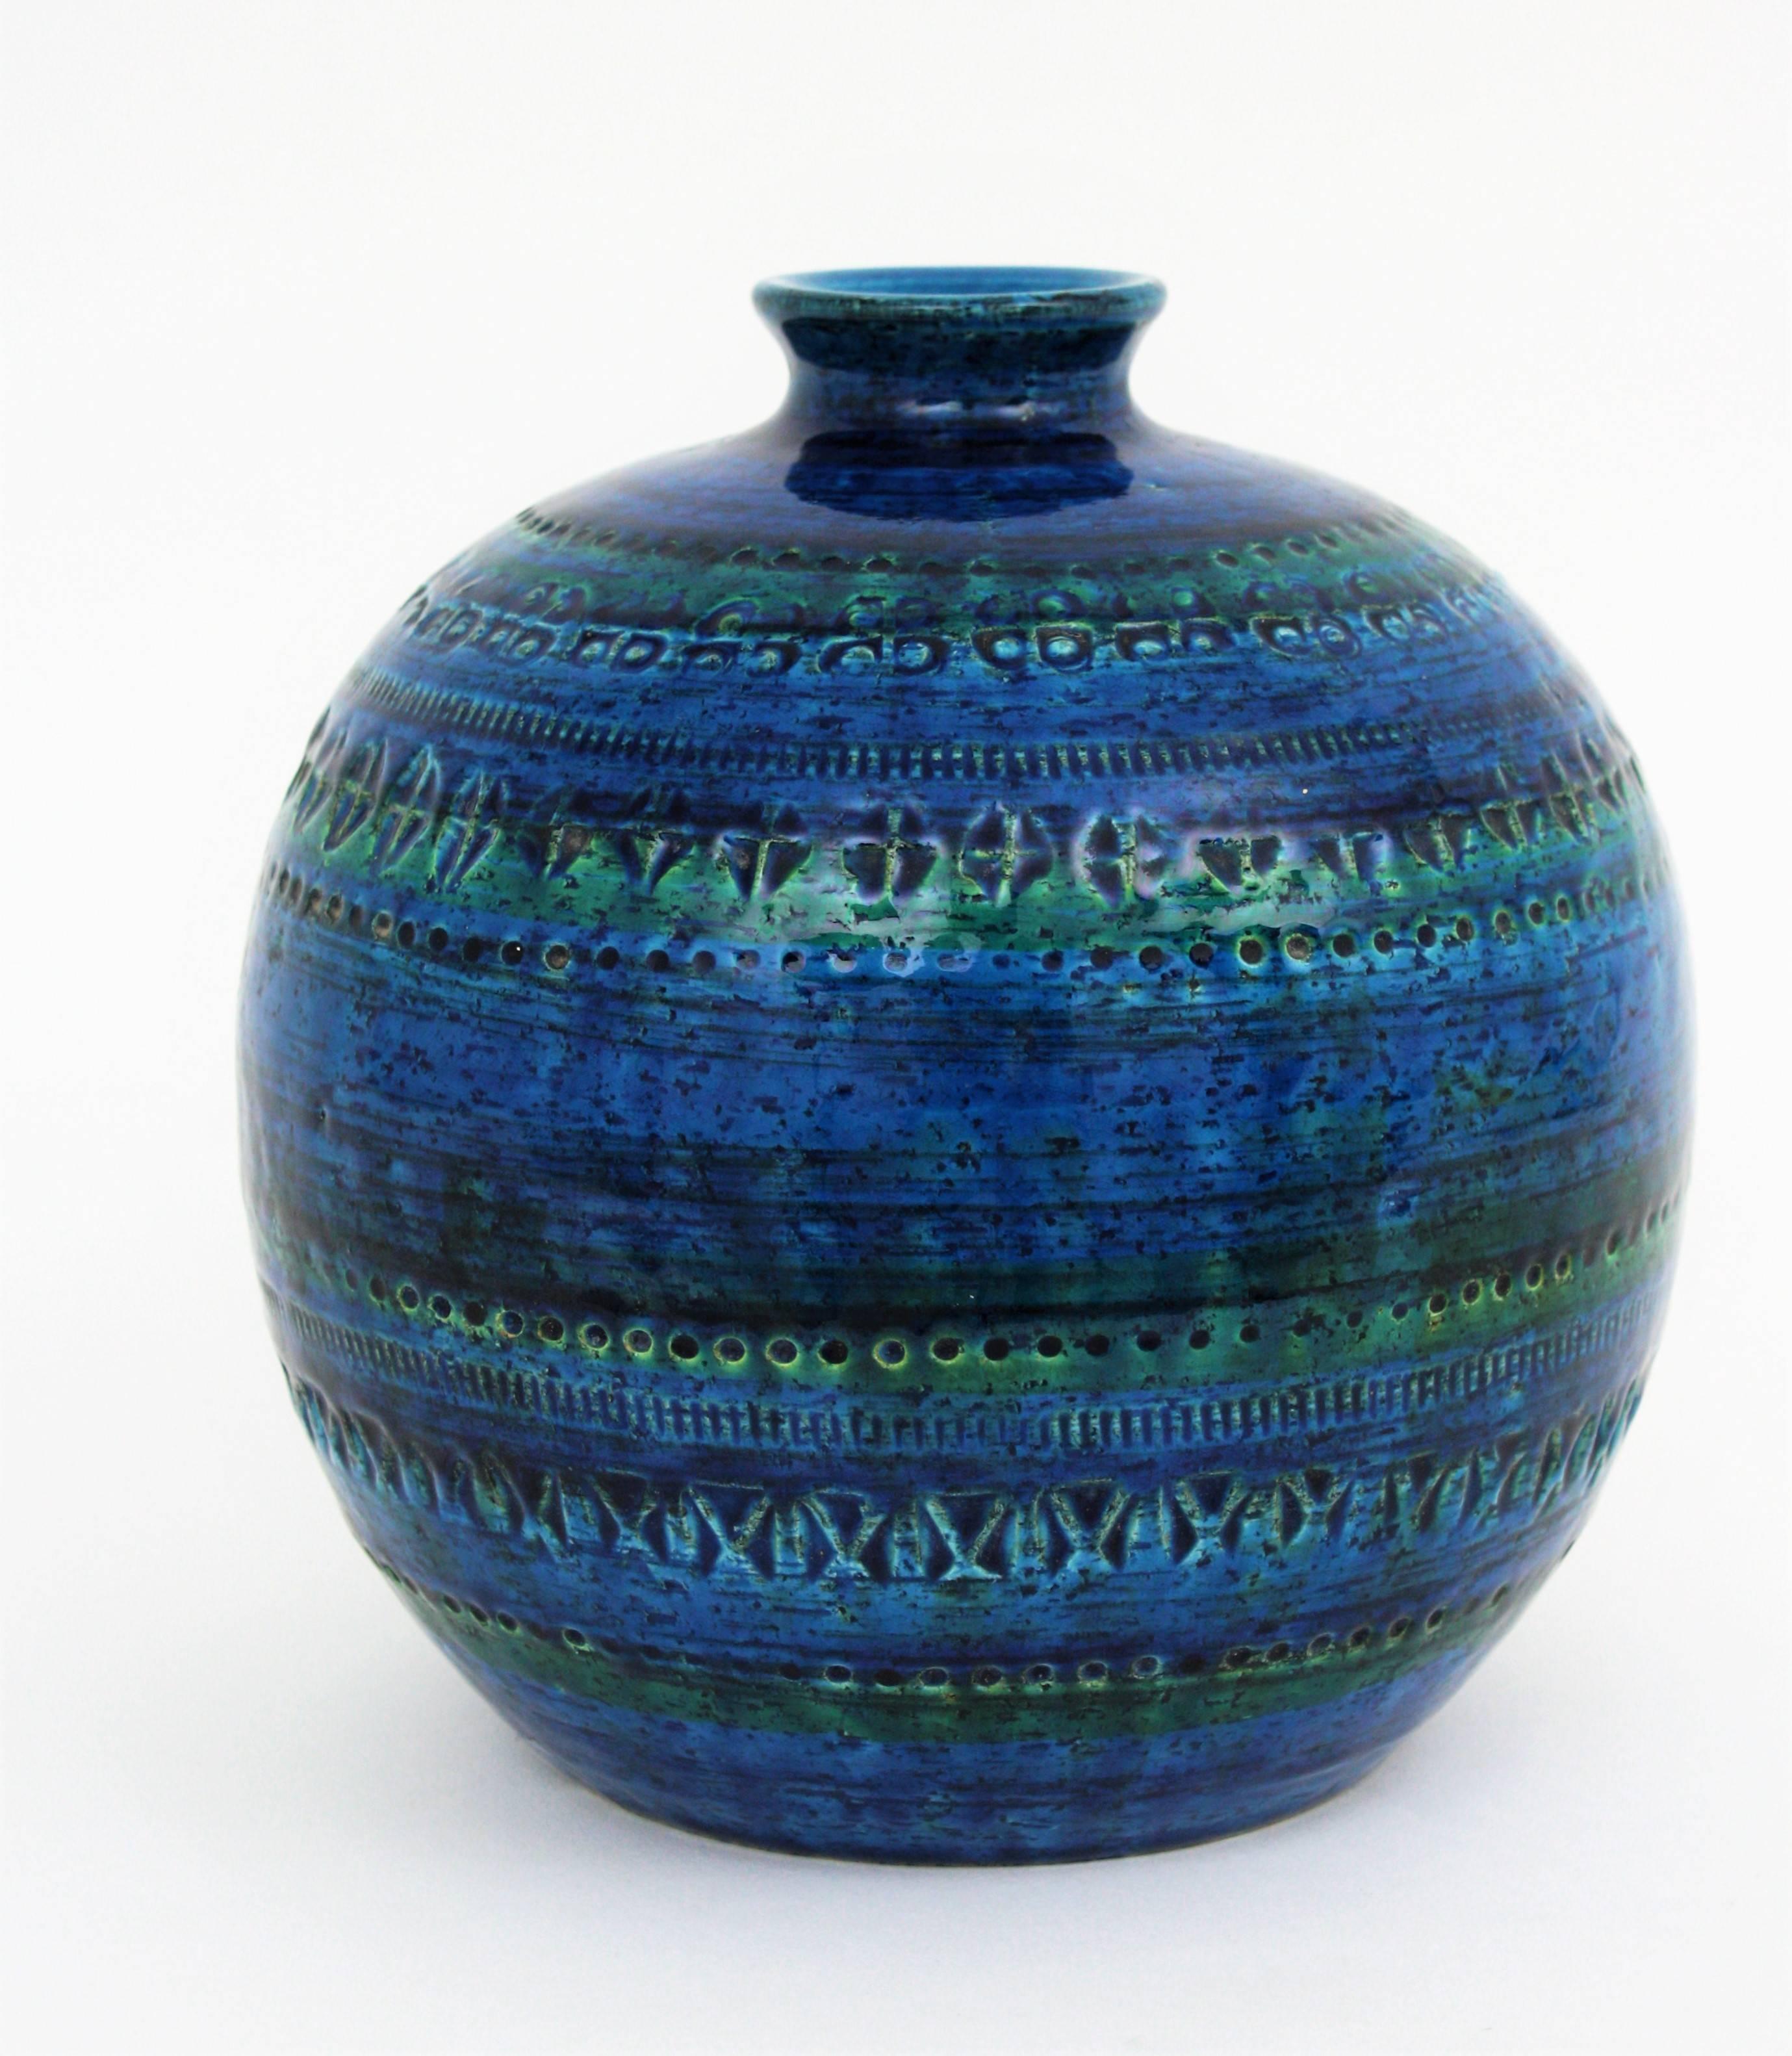 Eine schöne handgefertigte Rimini blaue kugelförmige Keramikvase:: entworfen von Aldo Londi und hergestellt von Bitossi. 
Blau glasierte Keramik mit eingravierten Mustern:: die den oberen und unteren Teil der Vase verzieren. Die wunderschönen